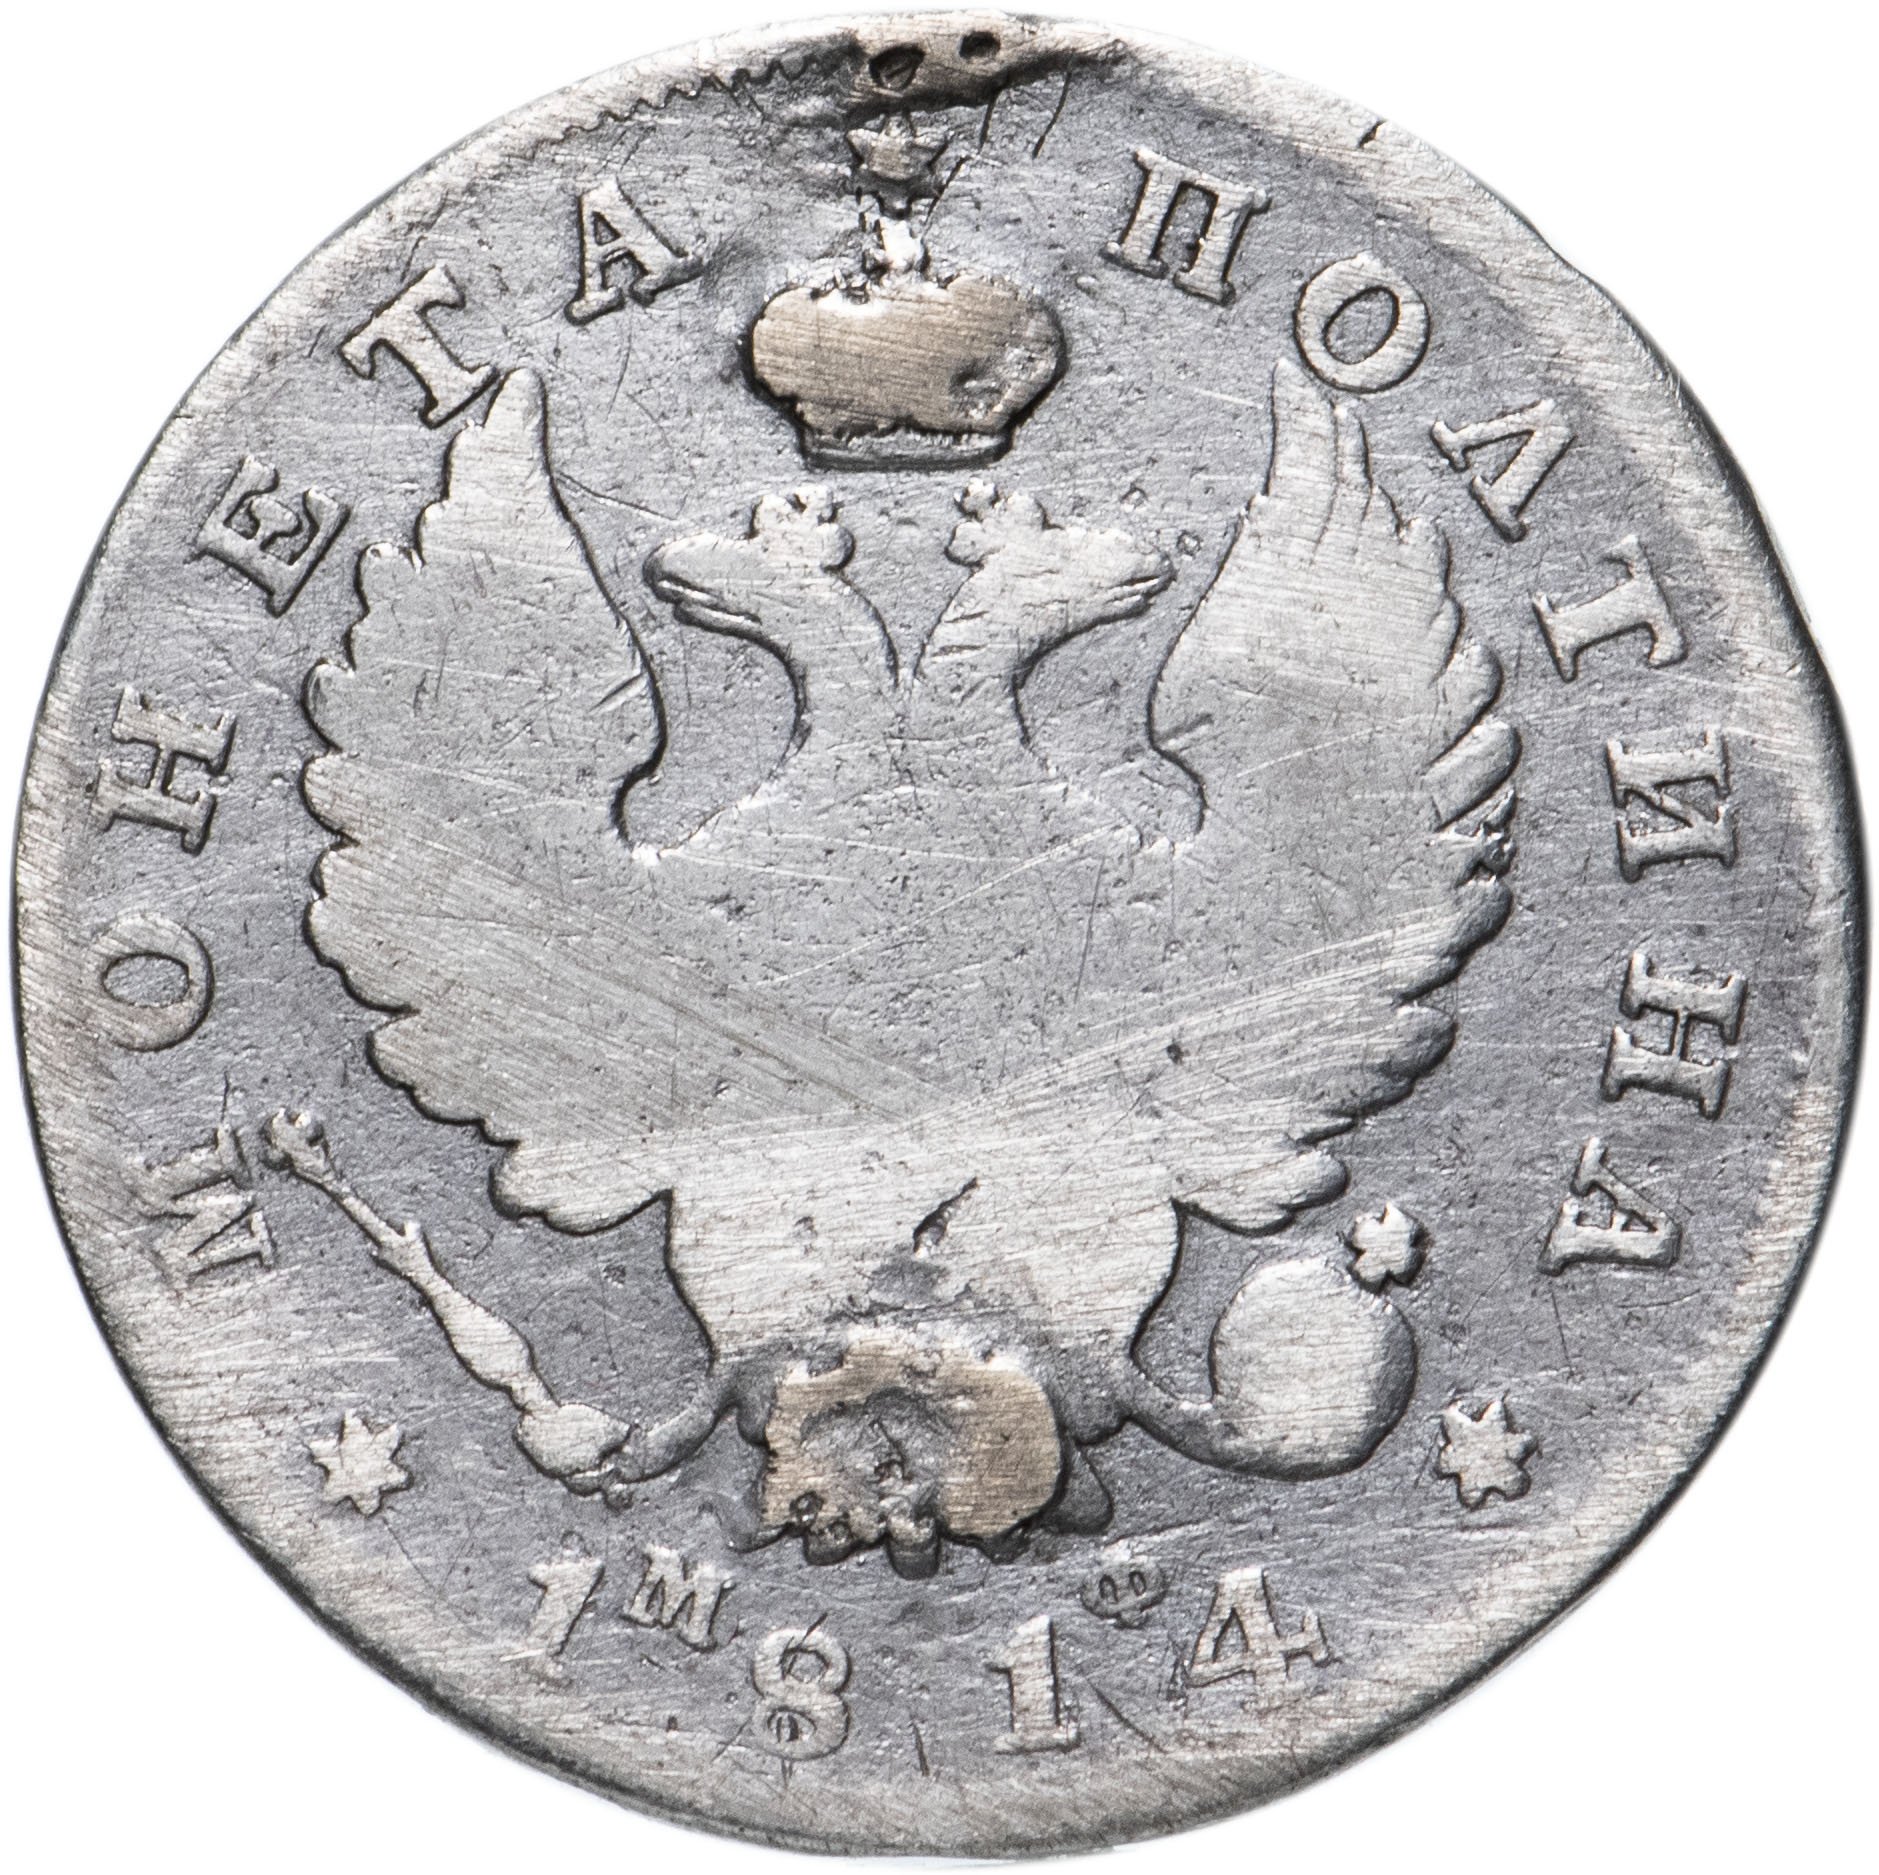 Полтина. Полтина 1814. VG полтина. Монета полтина серебро.